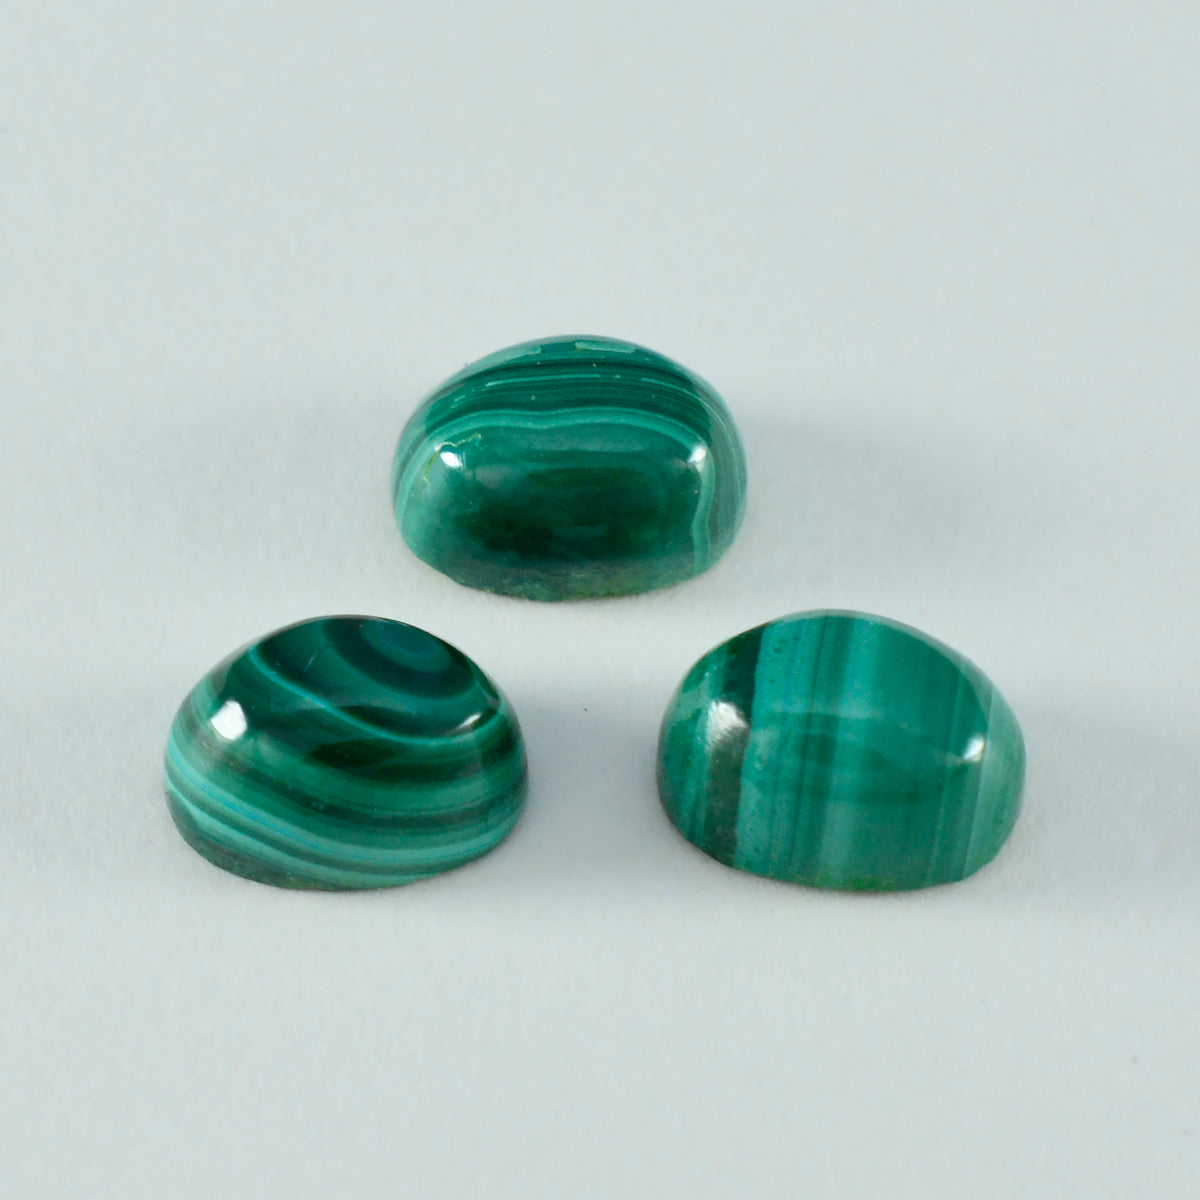 riyogems 1 шт. зеленый малахитовый кабошон 3x5 мм овальной формы прекрасного качества, свободный драгоценный камень